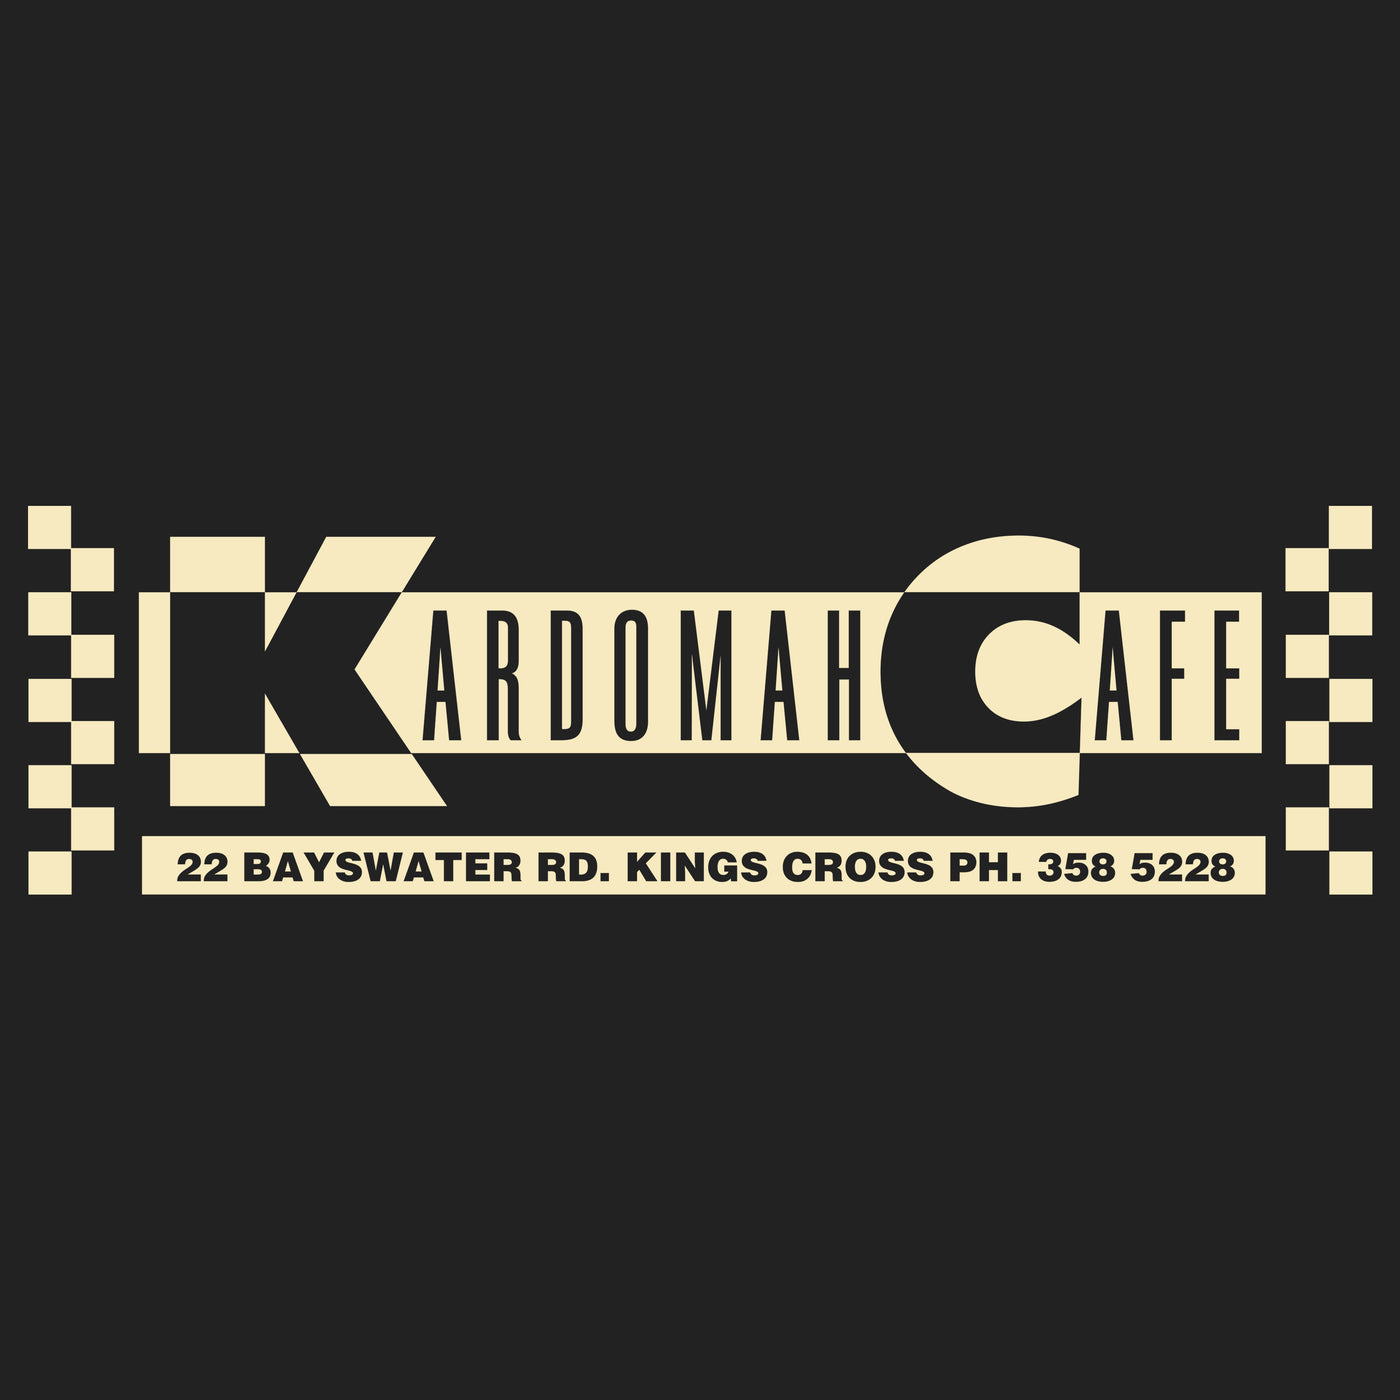 Kardomah Cafe